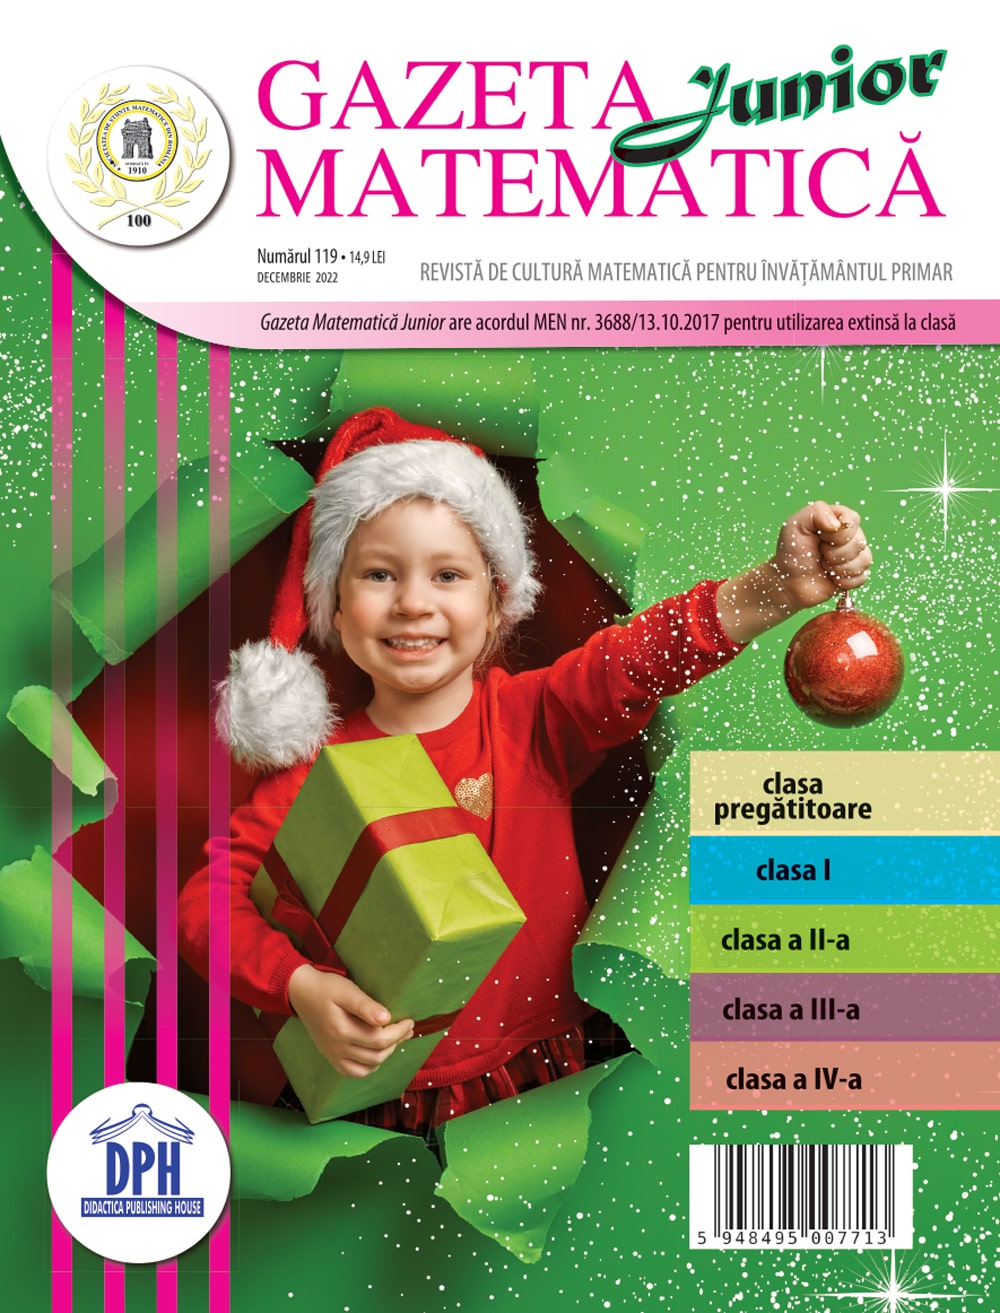 Gazeta Matematica Junior nr. 119 Decembrie 2022